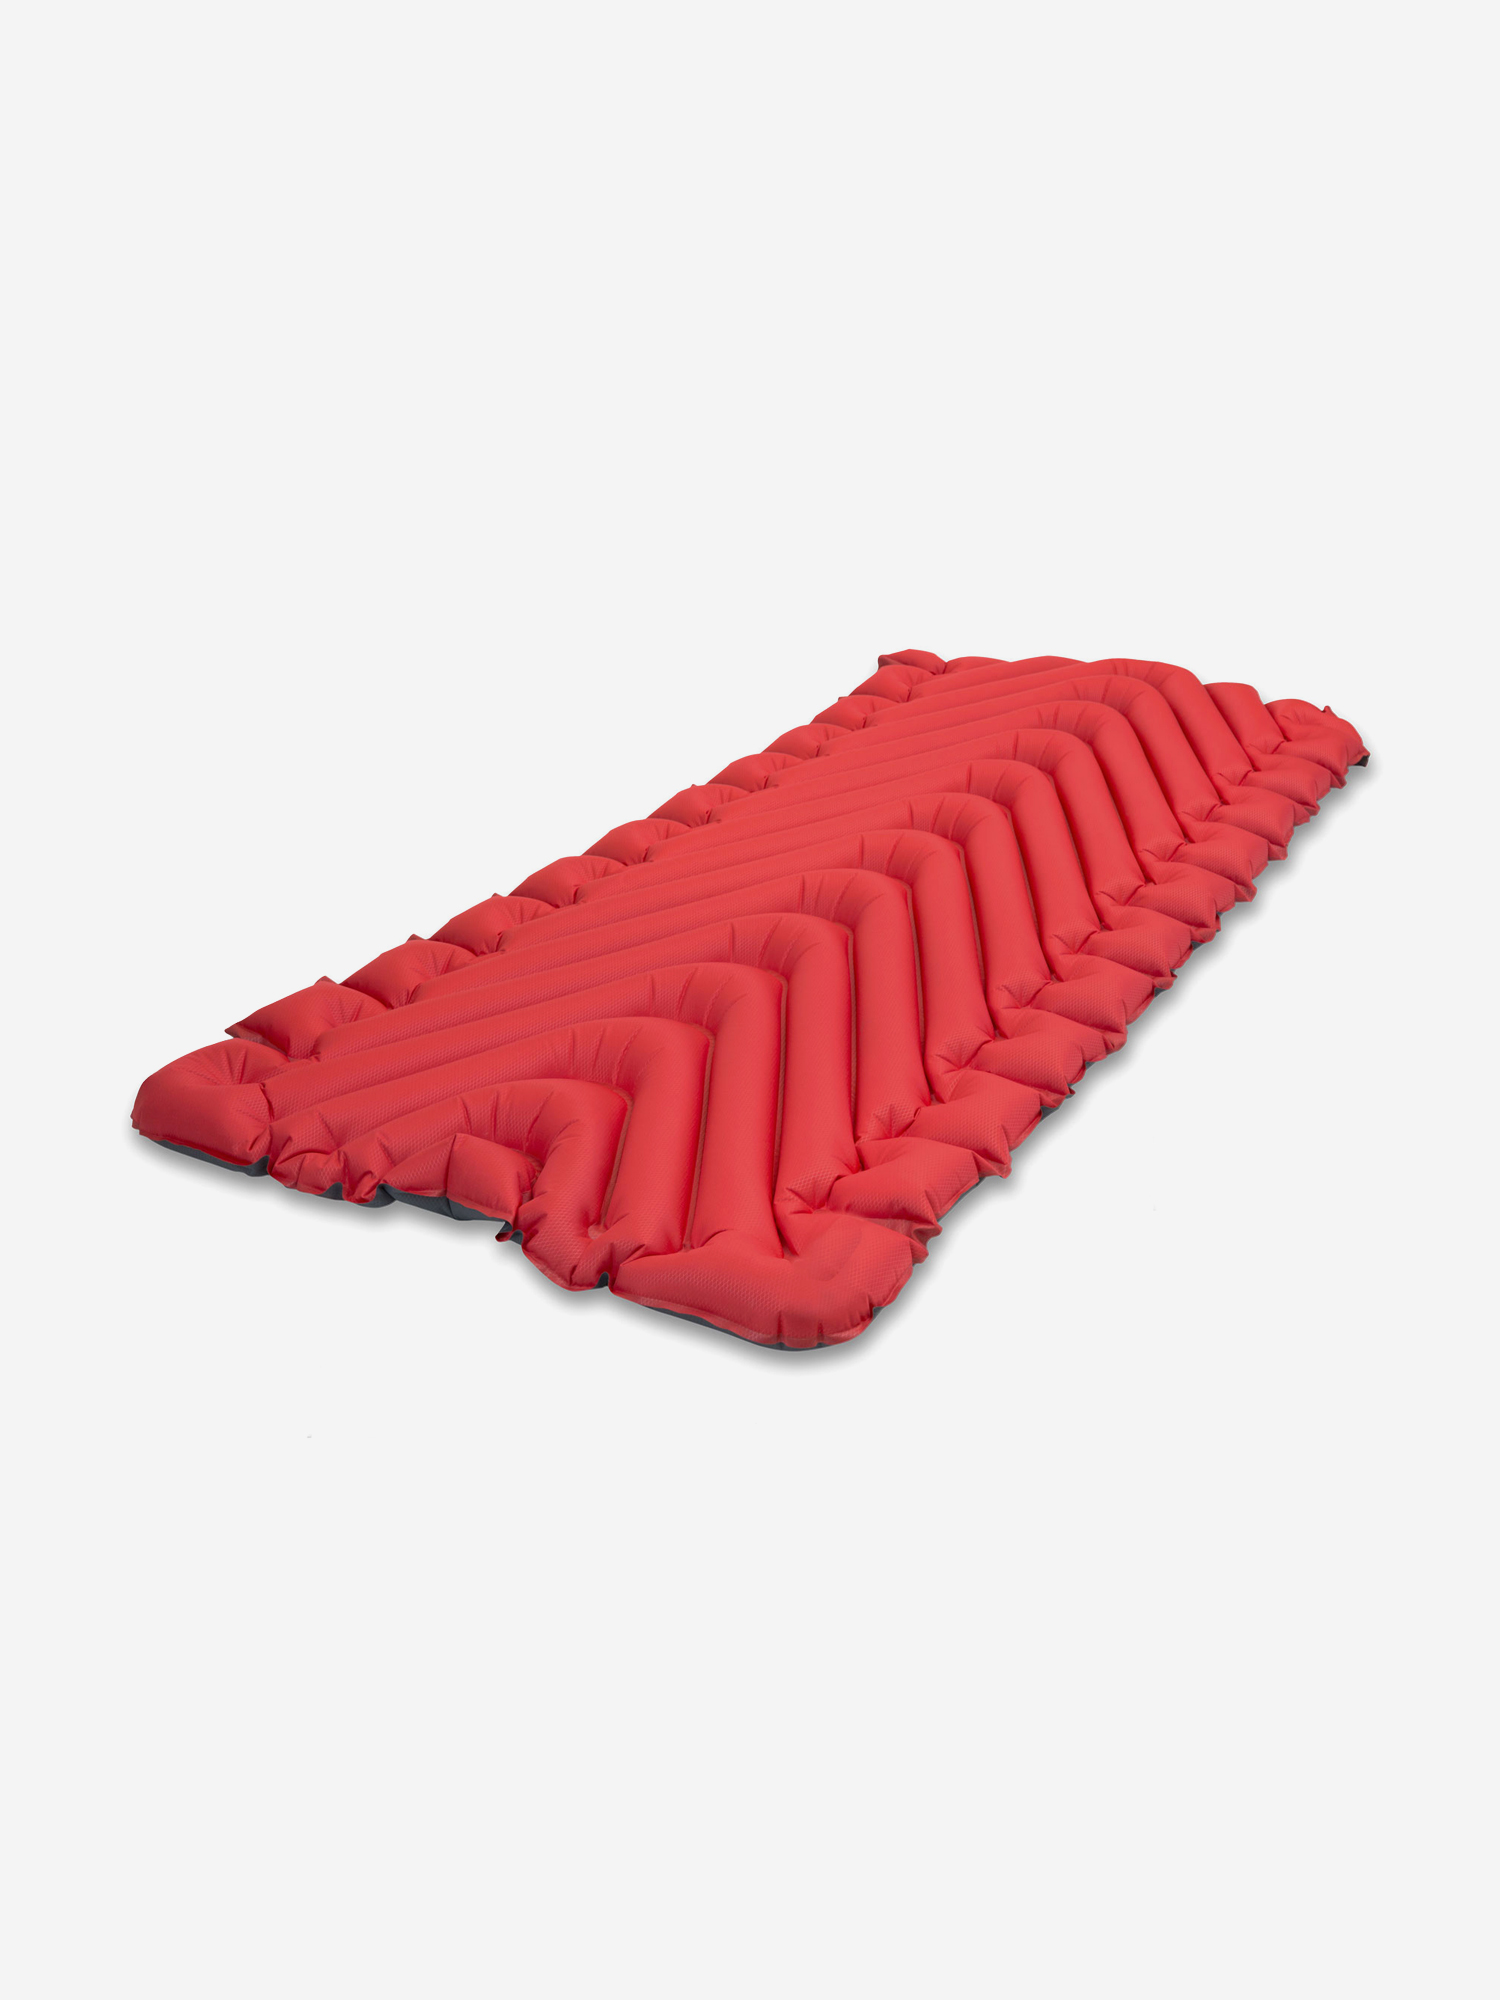 Надувной коврик KLYMIT Insulated Static V Luxe, Красный палатка трекинговая klymit cross canyon 4 09c4rd01d красно серая красный